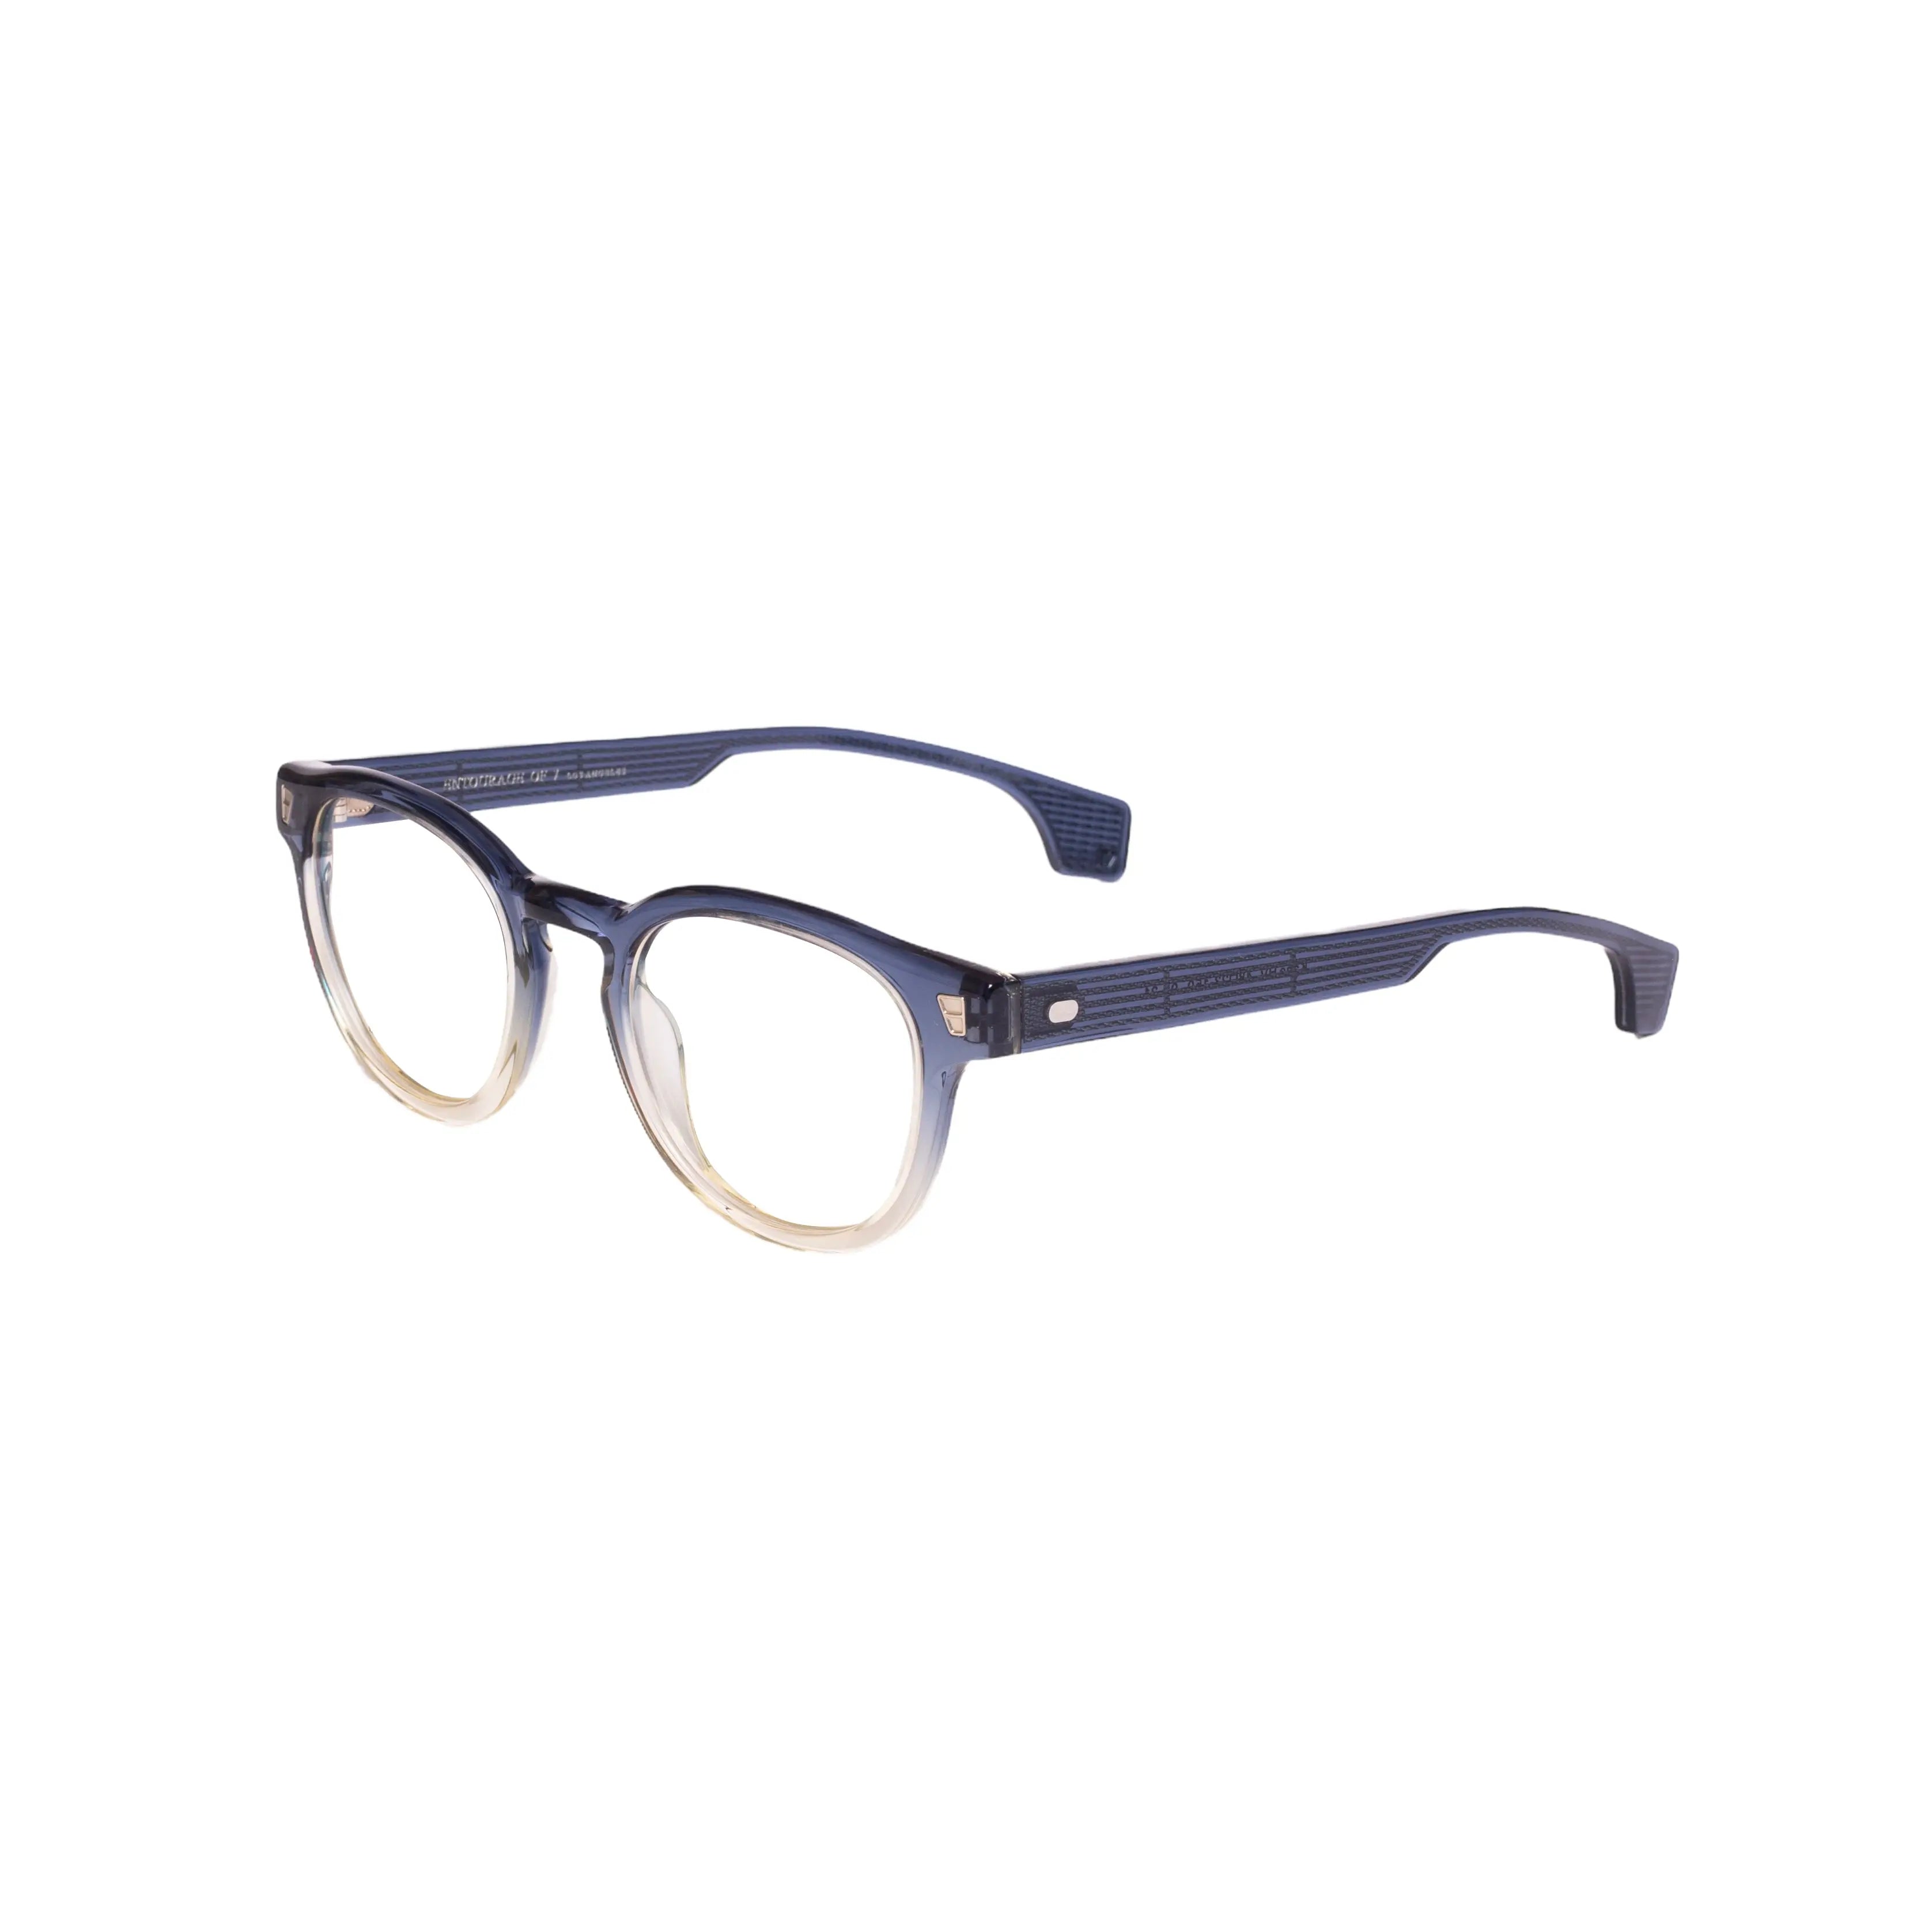 ENTOURAGE OF 7-KANE-HV-48-C052 Eyeglasses - Premium Eyeglasses from ENTOURAGE OF 7 - Just Rs. 16520! Shop now at Laxmi Opticians